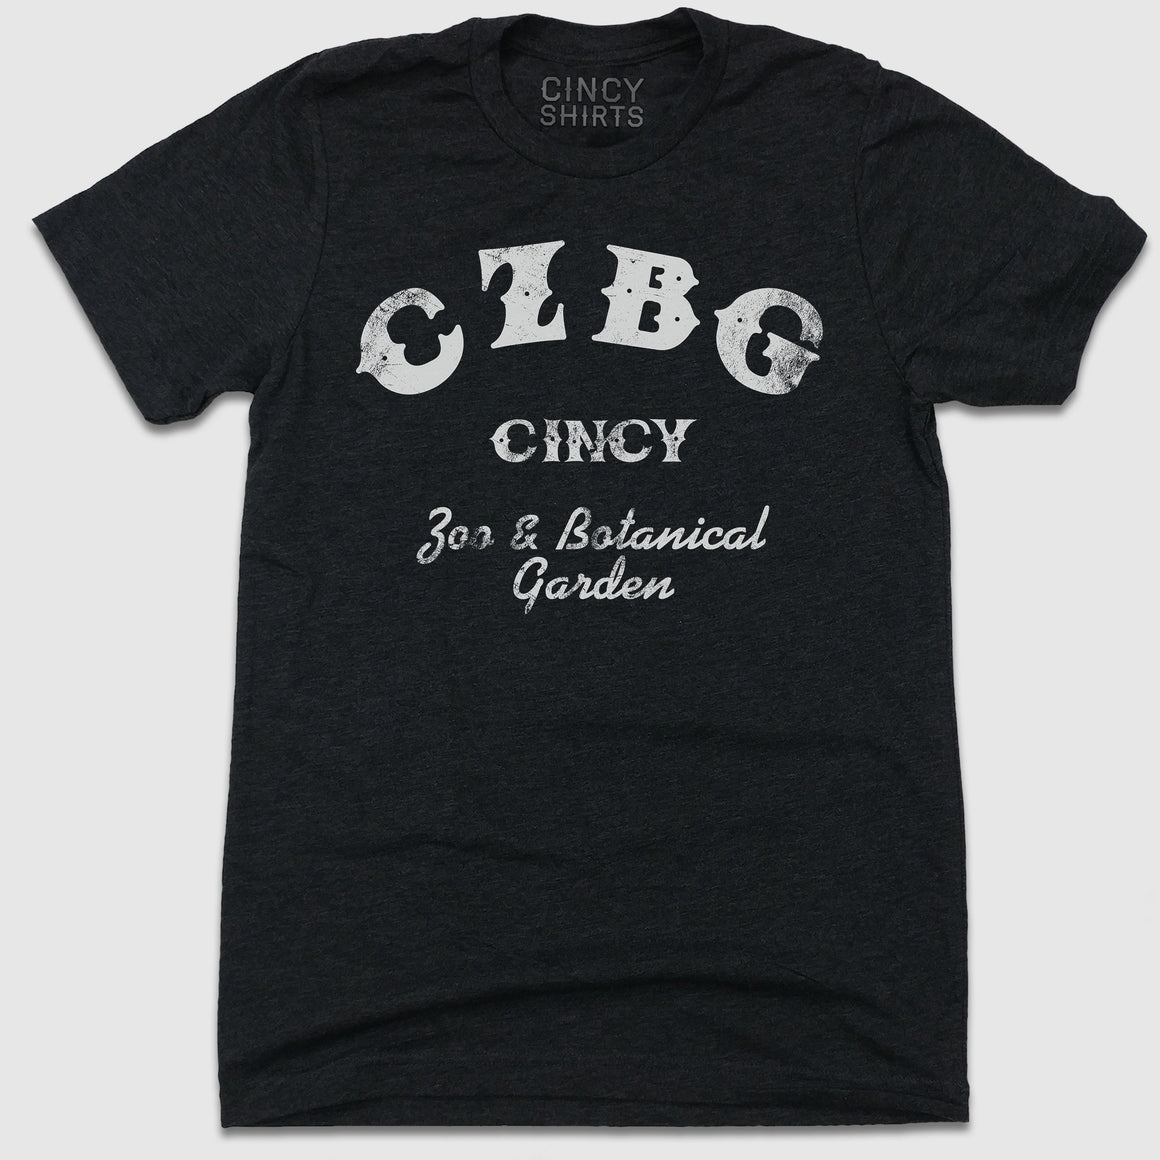 CZBG - Cincy Shirts